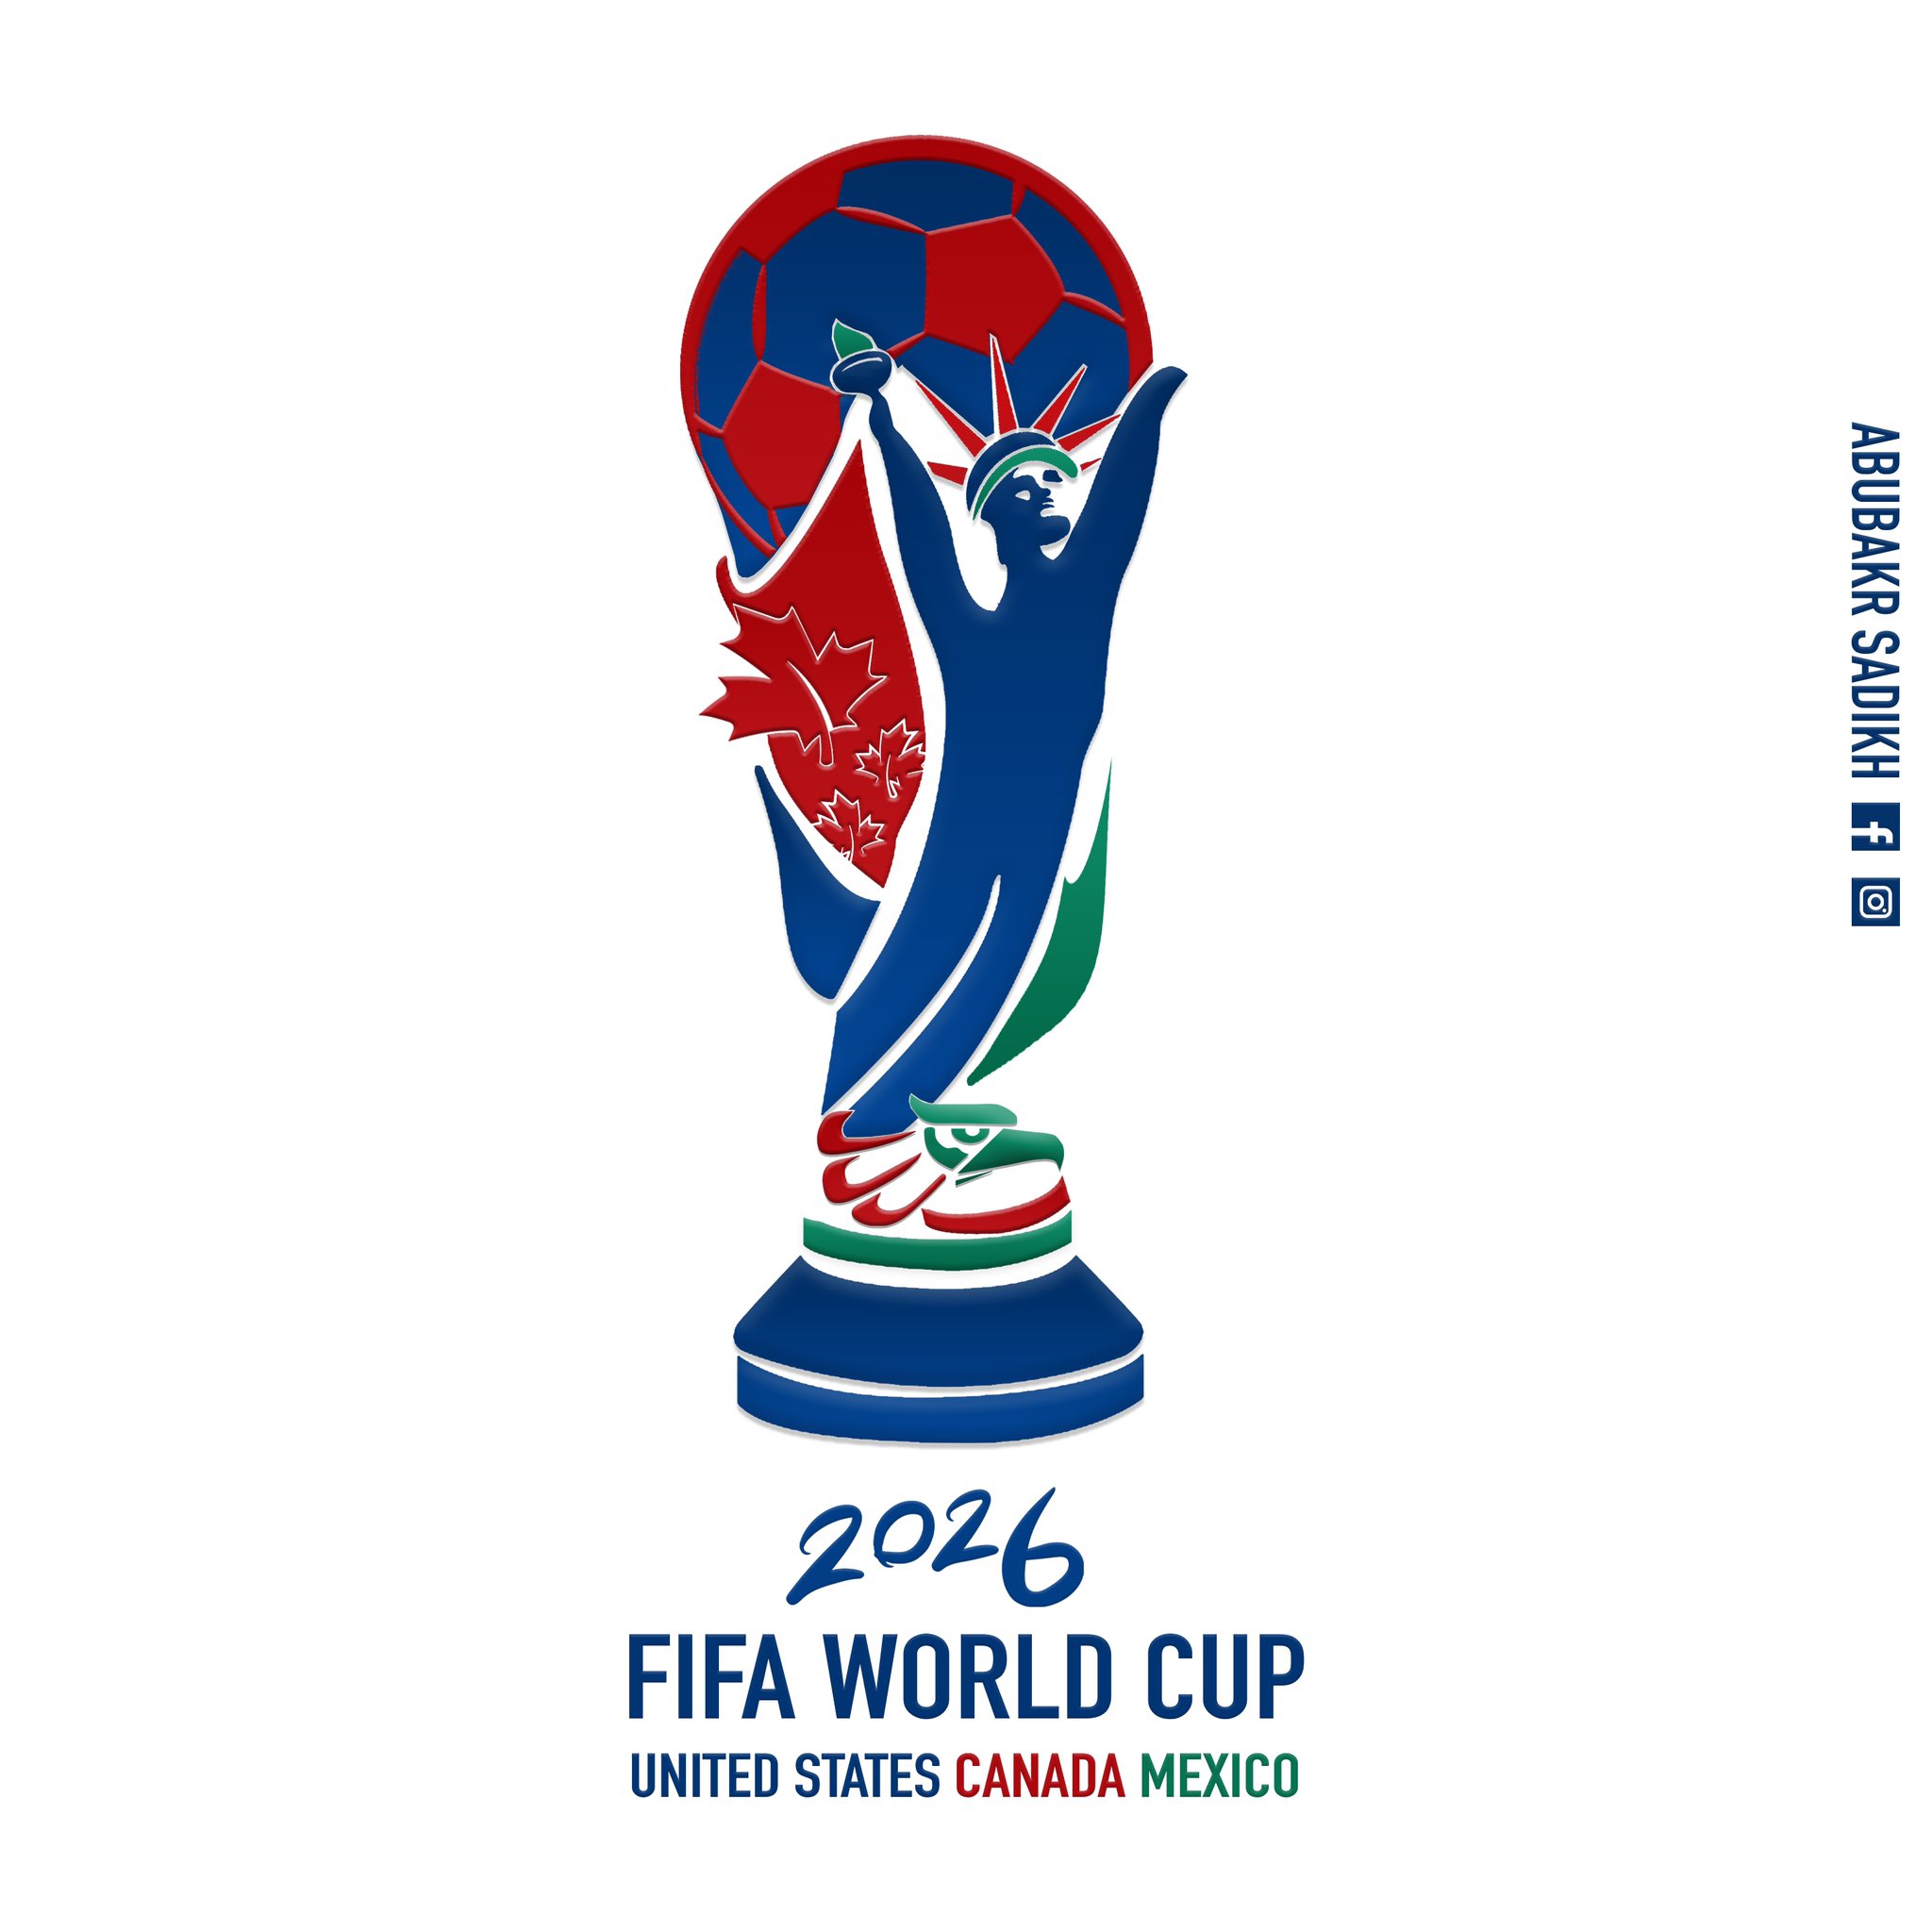 Công bố logo chính thức của World Cup 2026